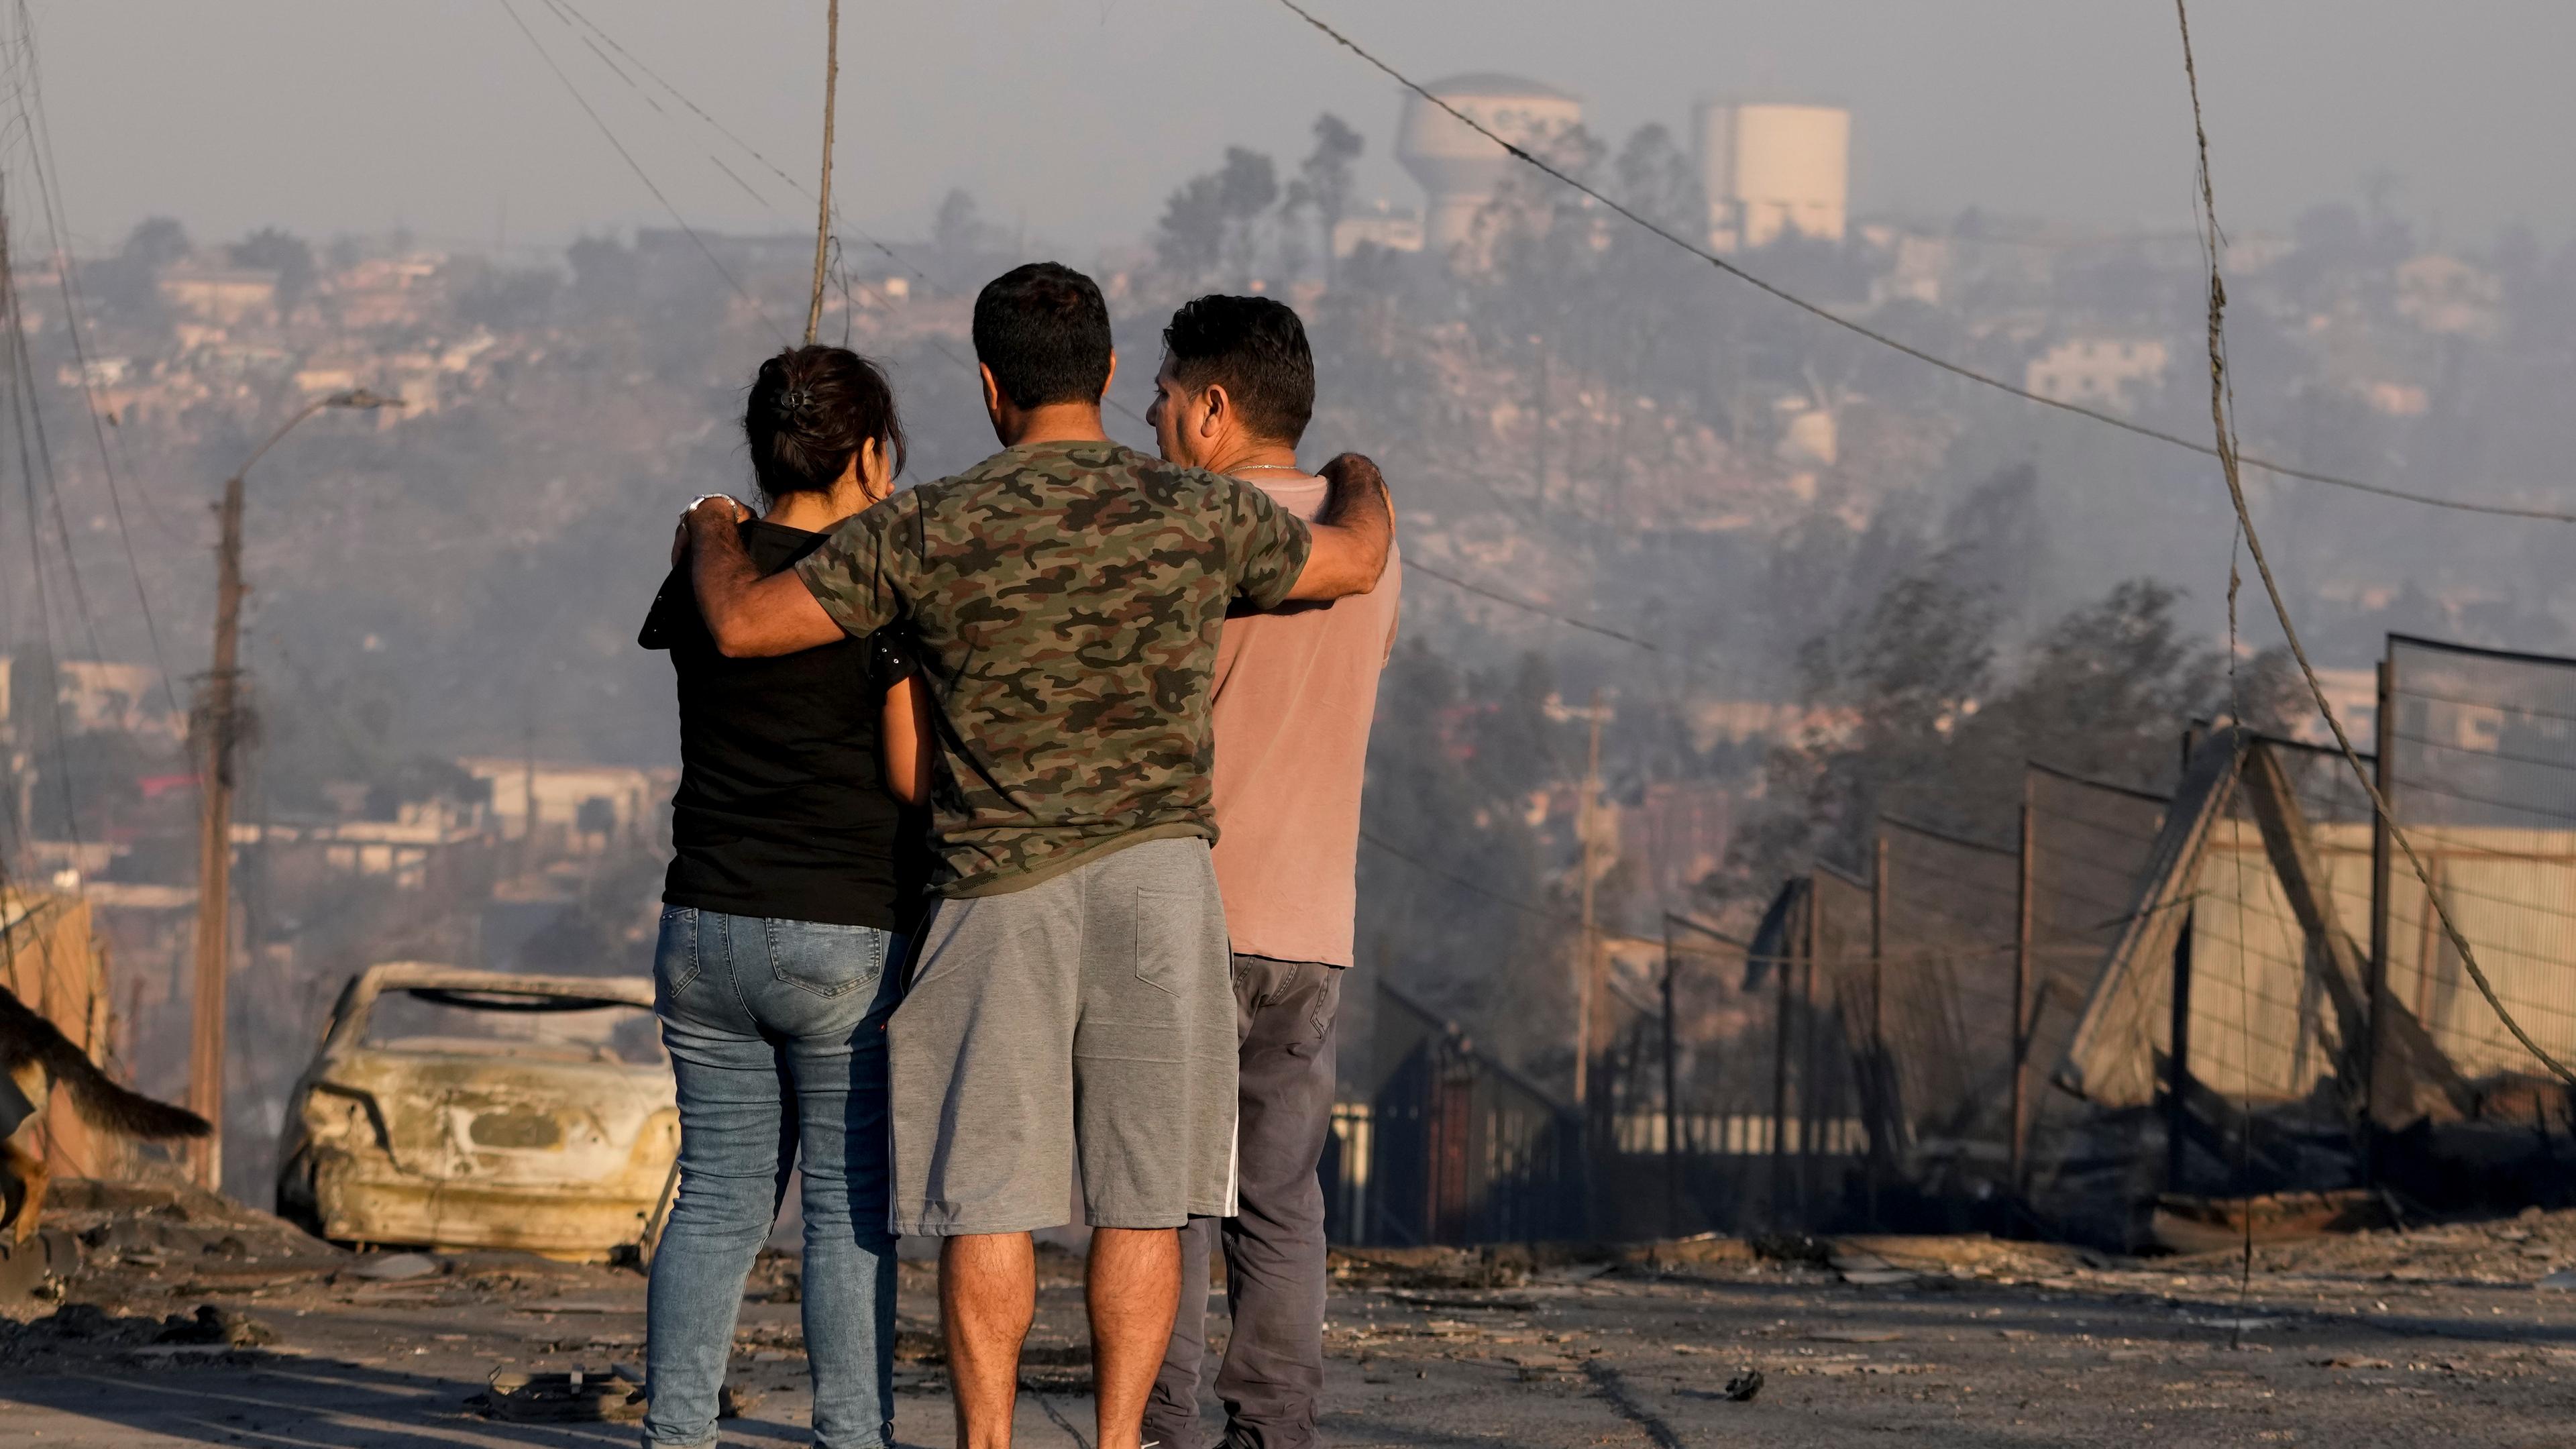 Waldbrände plagen Chile: Einheimische sehen sich ausgebrannte Häuser und andere Trümmer an, nachdem ein Waldbrand ihr Viertel erreicht hat.